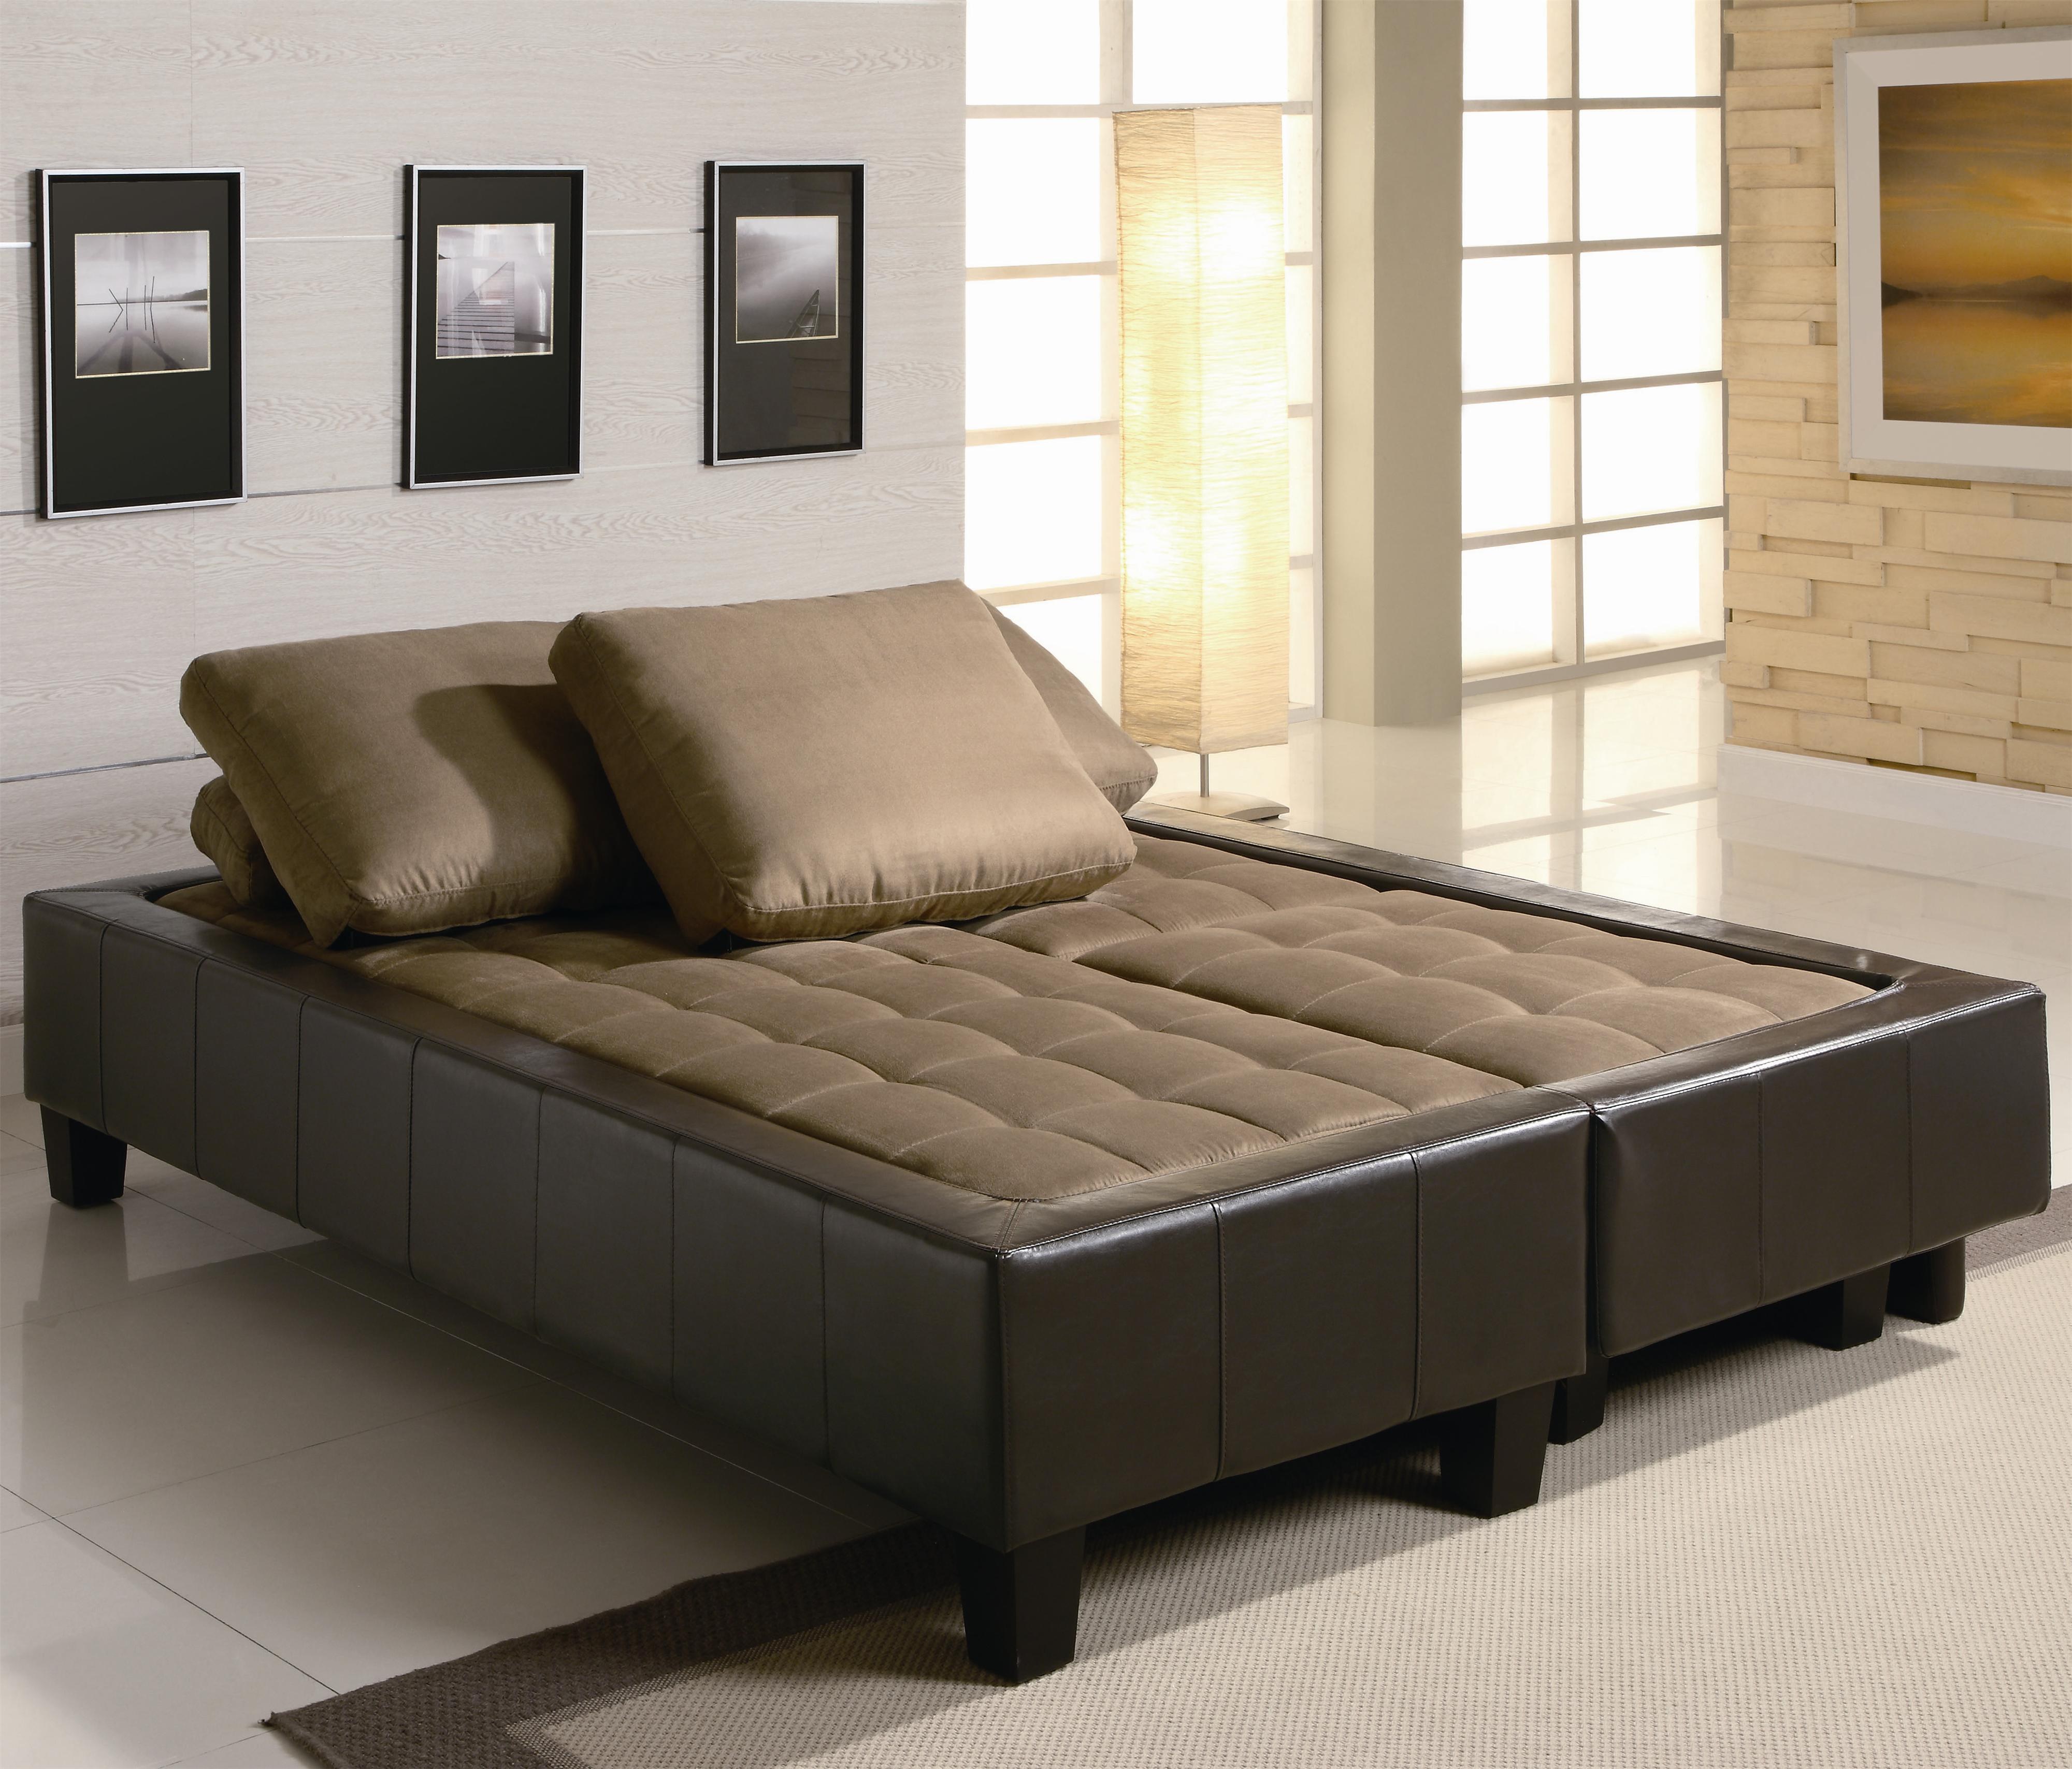 Красивая диван кровать. Диван Sofa Bed. Диван Sectional Sleeper для сна. Диван-кровать Miller Sofa-Bed. Современный раскладной диван.